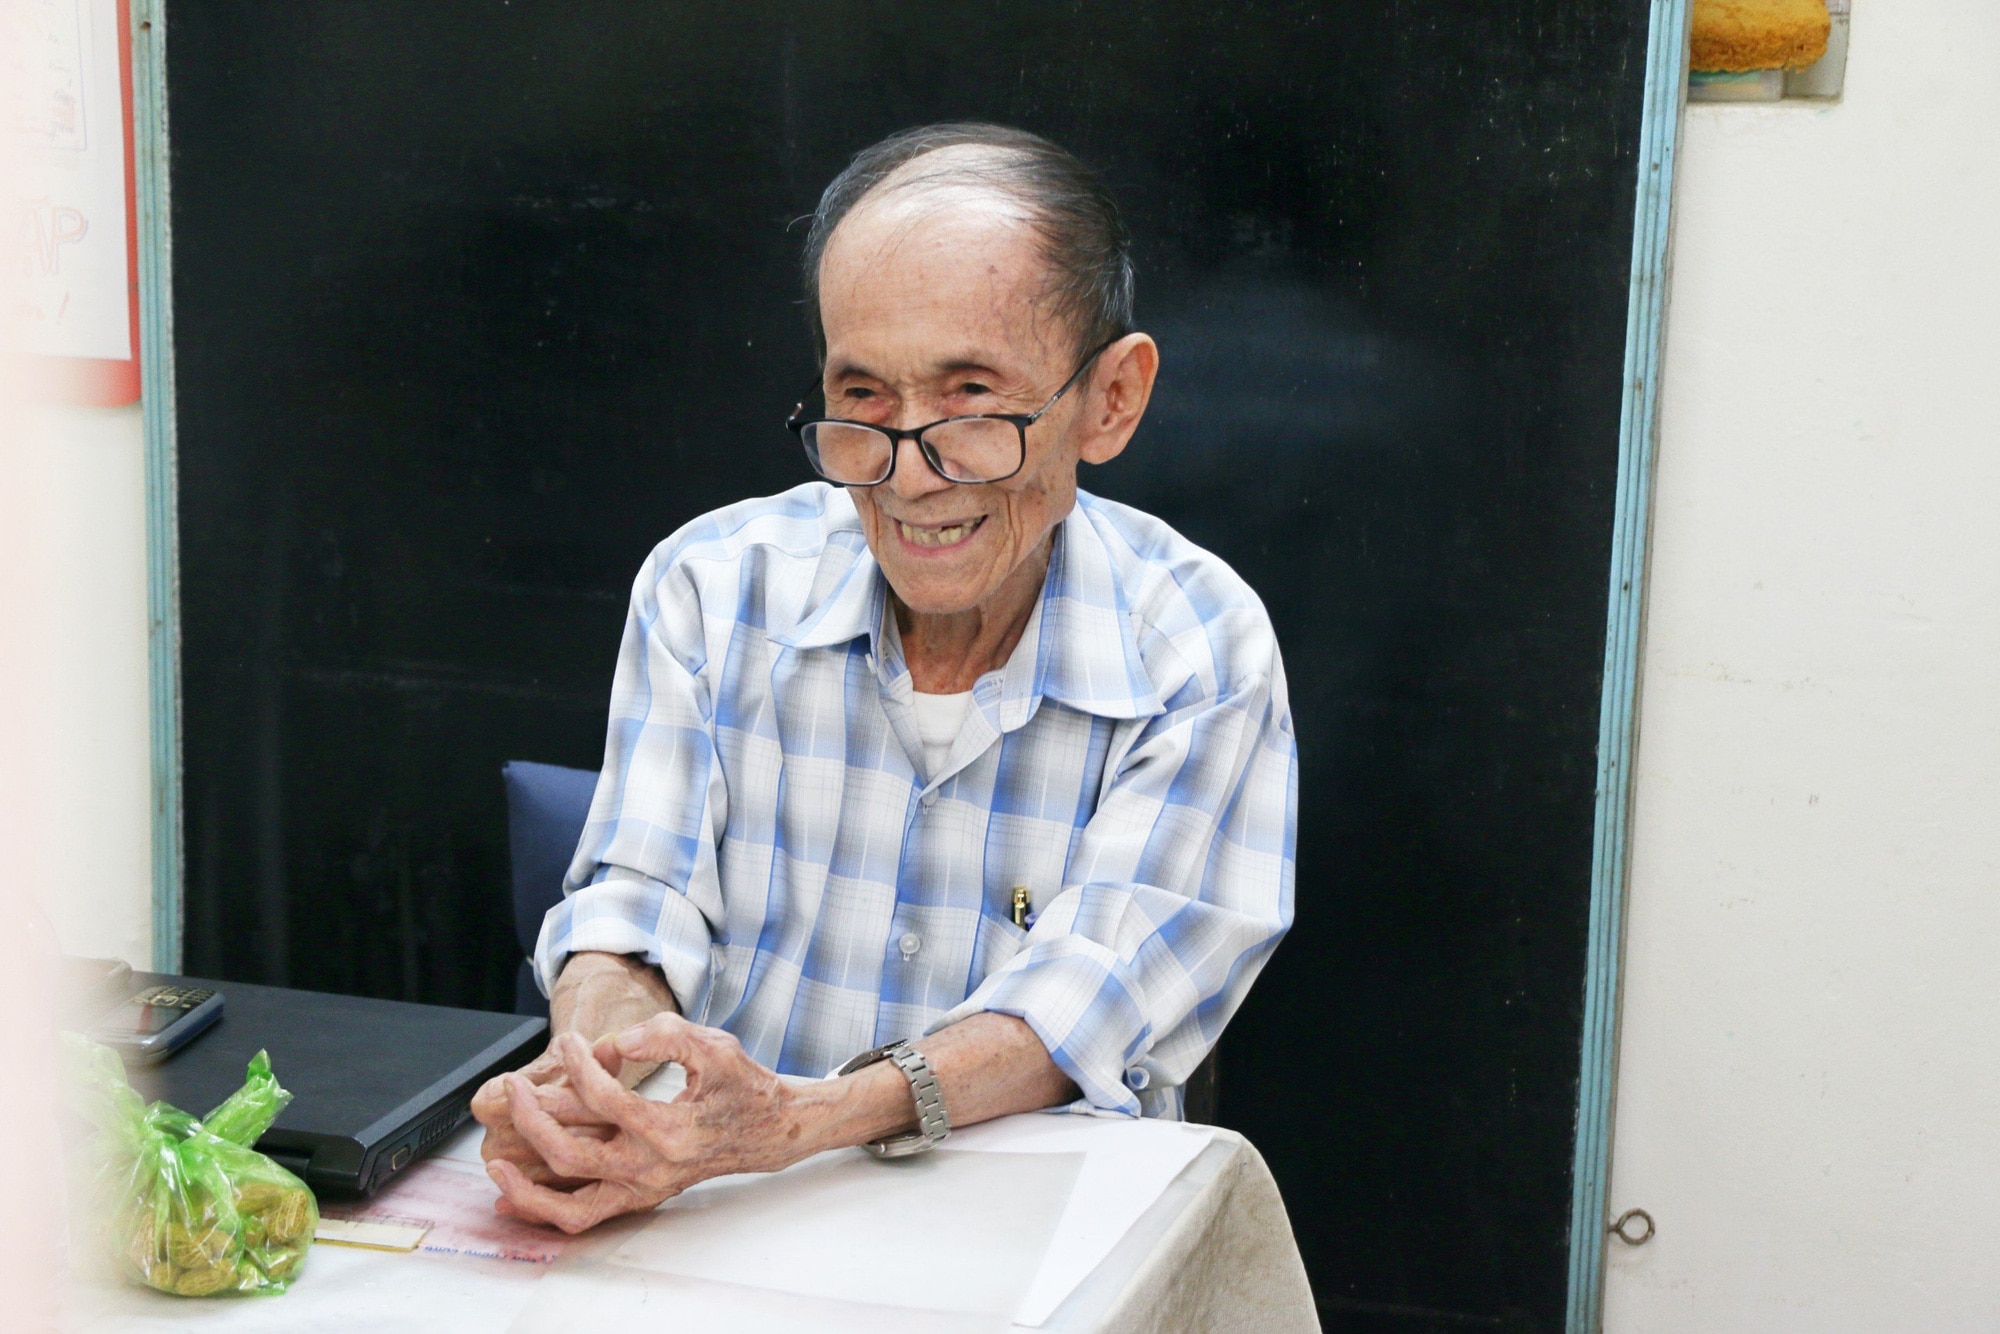 Cụ ông Nguyễn Tấn Thành nay đã 87 tuổi khiến nhiều người ngạc nhiên và ngưỡng mộ khi vẫn quyết tâm đi thi cao học tại Cần Thơ - Ảnh: LAN NGỌC